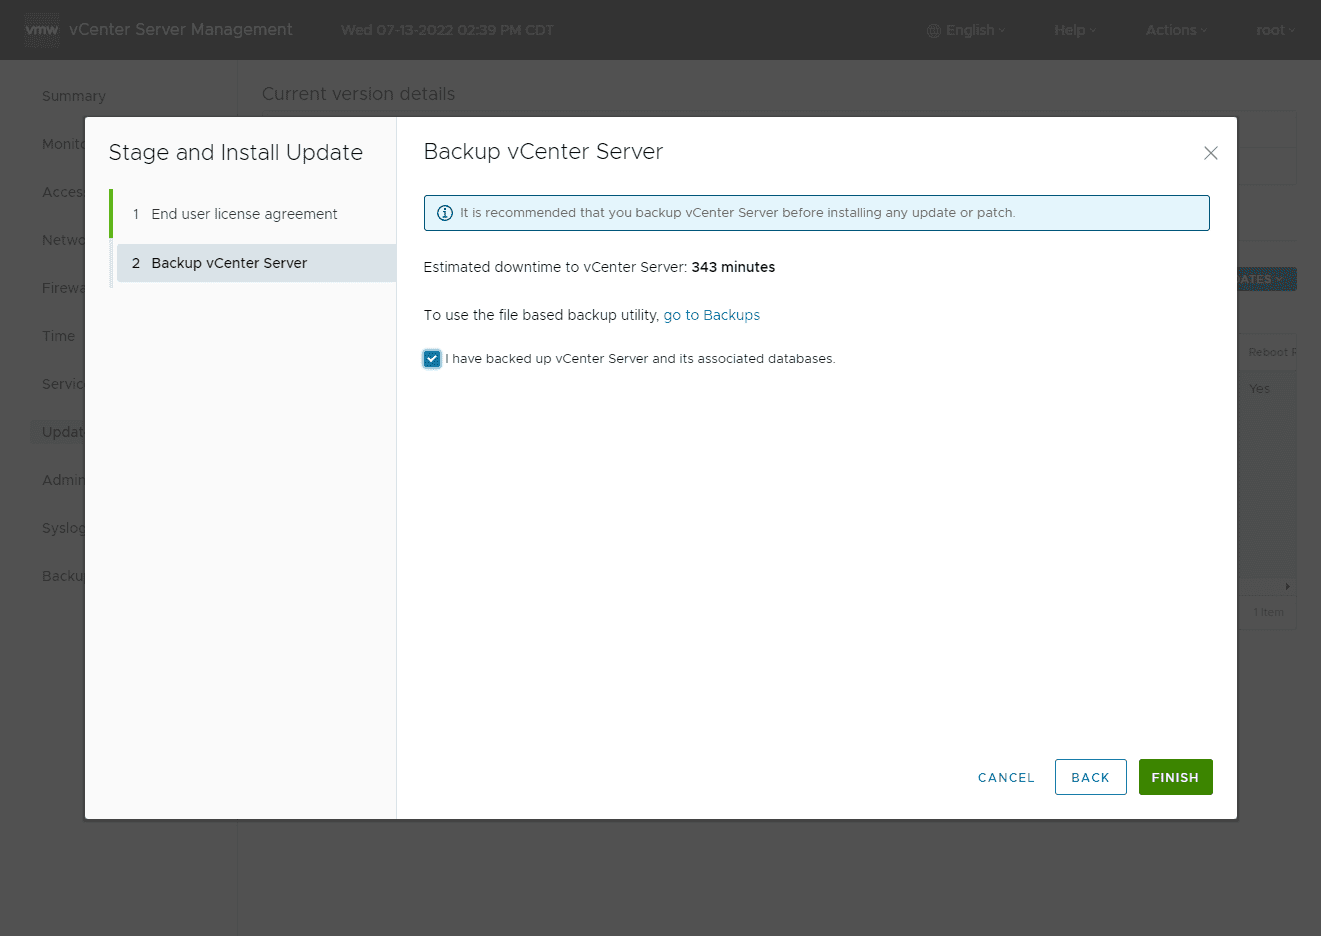 Backup vCenter Server confirmation